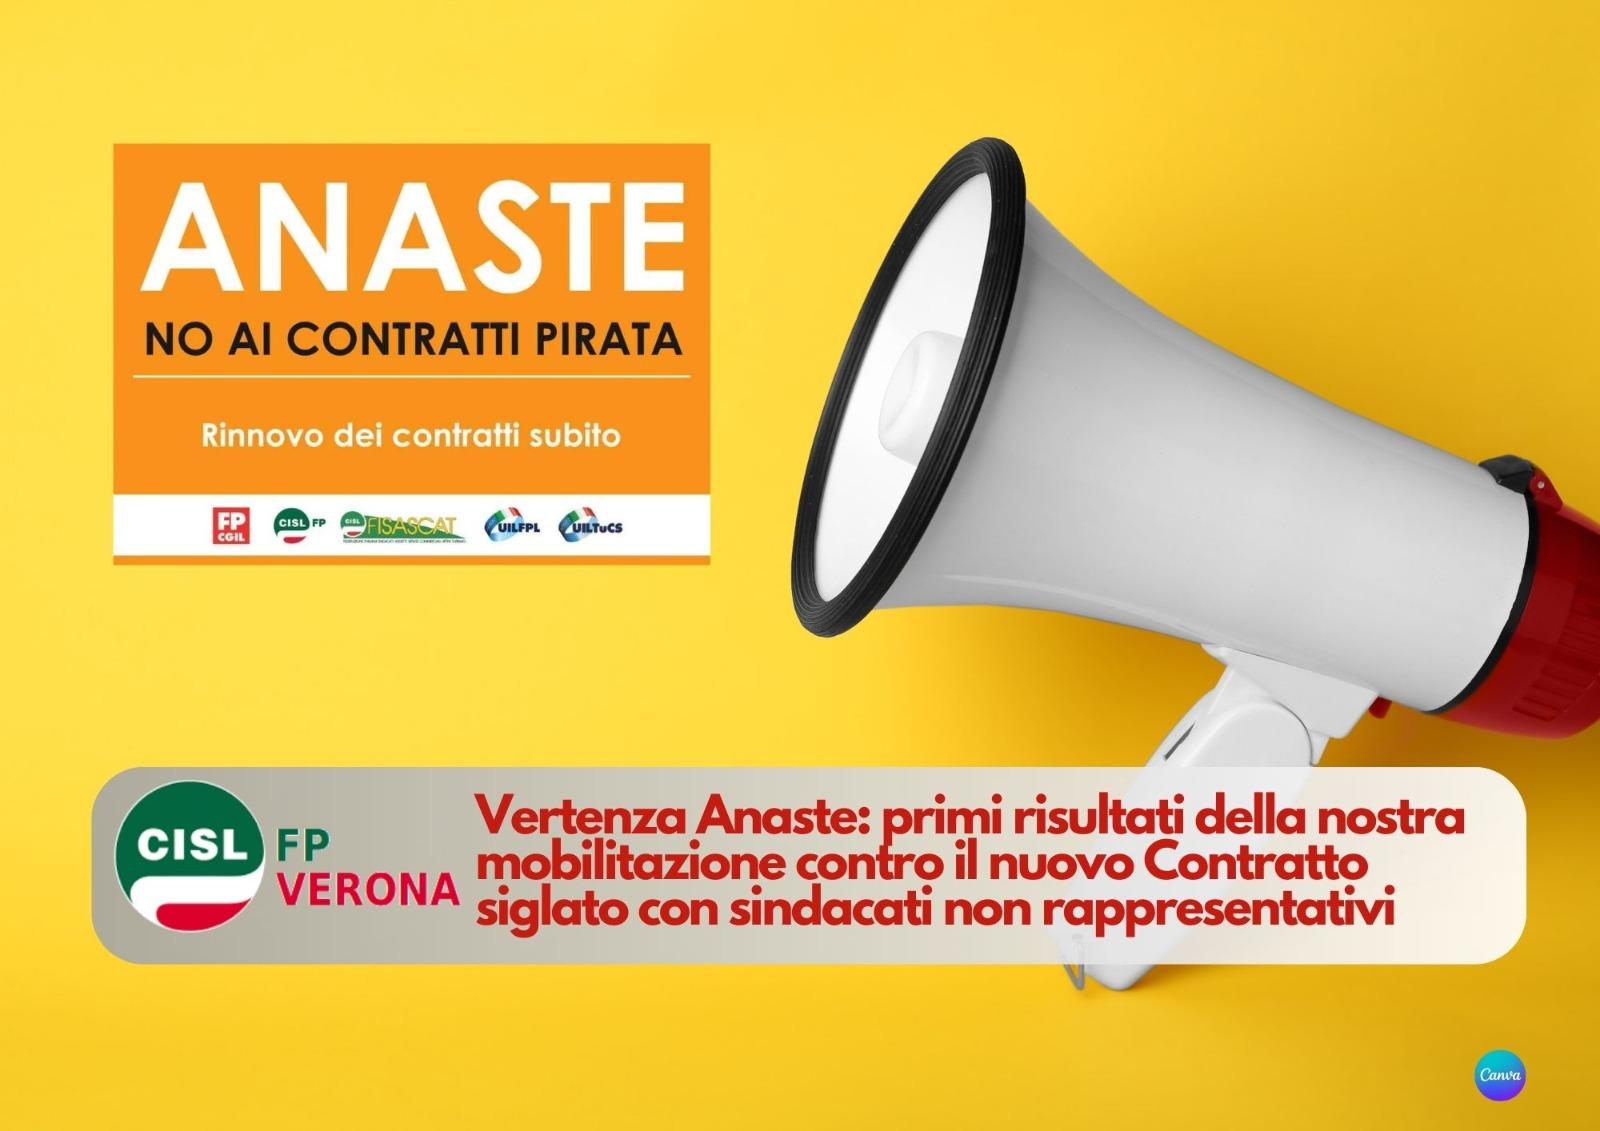 CISL FP Verona. Vertenza Anaste: primi risultati della nostra mobilitazione contro il nuovo Contratto